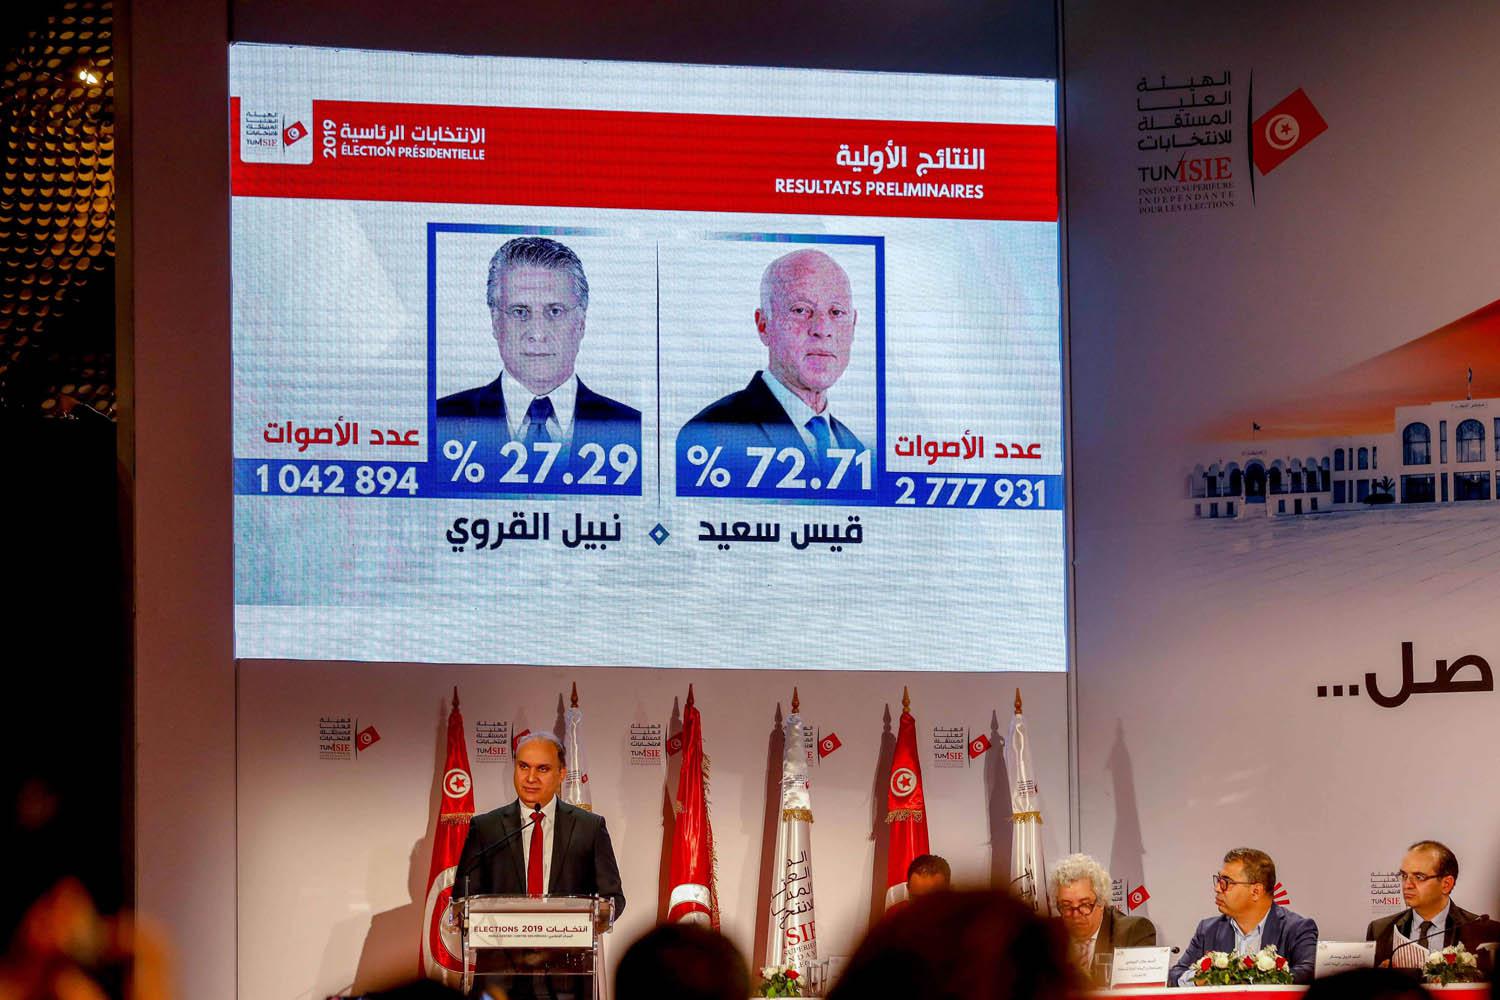 رئيس هيئة الانتخابات المستقلة نبيل بفون يعلن النتائج الأولية للانتخابات الرئاسية التونسية